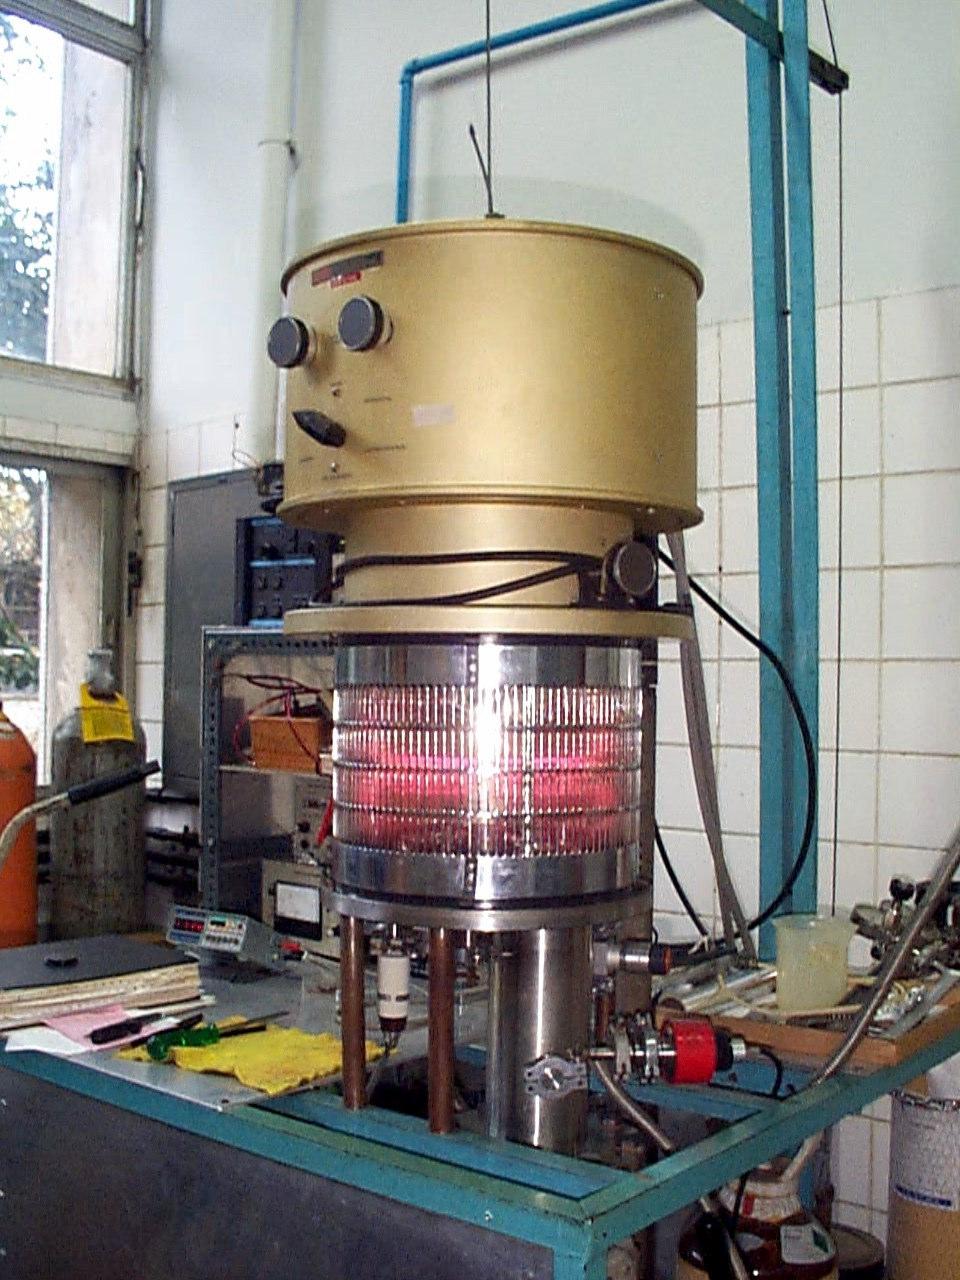 41 Eletrodos Capacitor de acoplamento Voltímetro DC Casador de impedâncias Substrato Fonte de r.f. Gás 1 Gás 2 Sistema de Vácuo Fig. 3.1. Ilustração esquemática do reator tipo diodo utilizado para deposição de filmes por plasma.